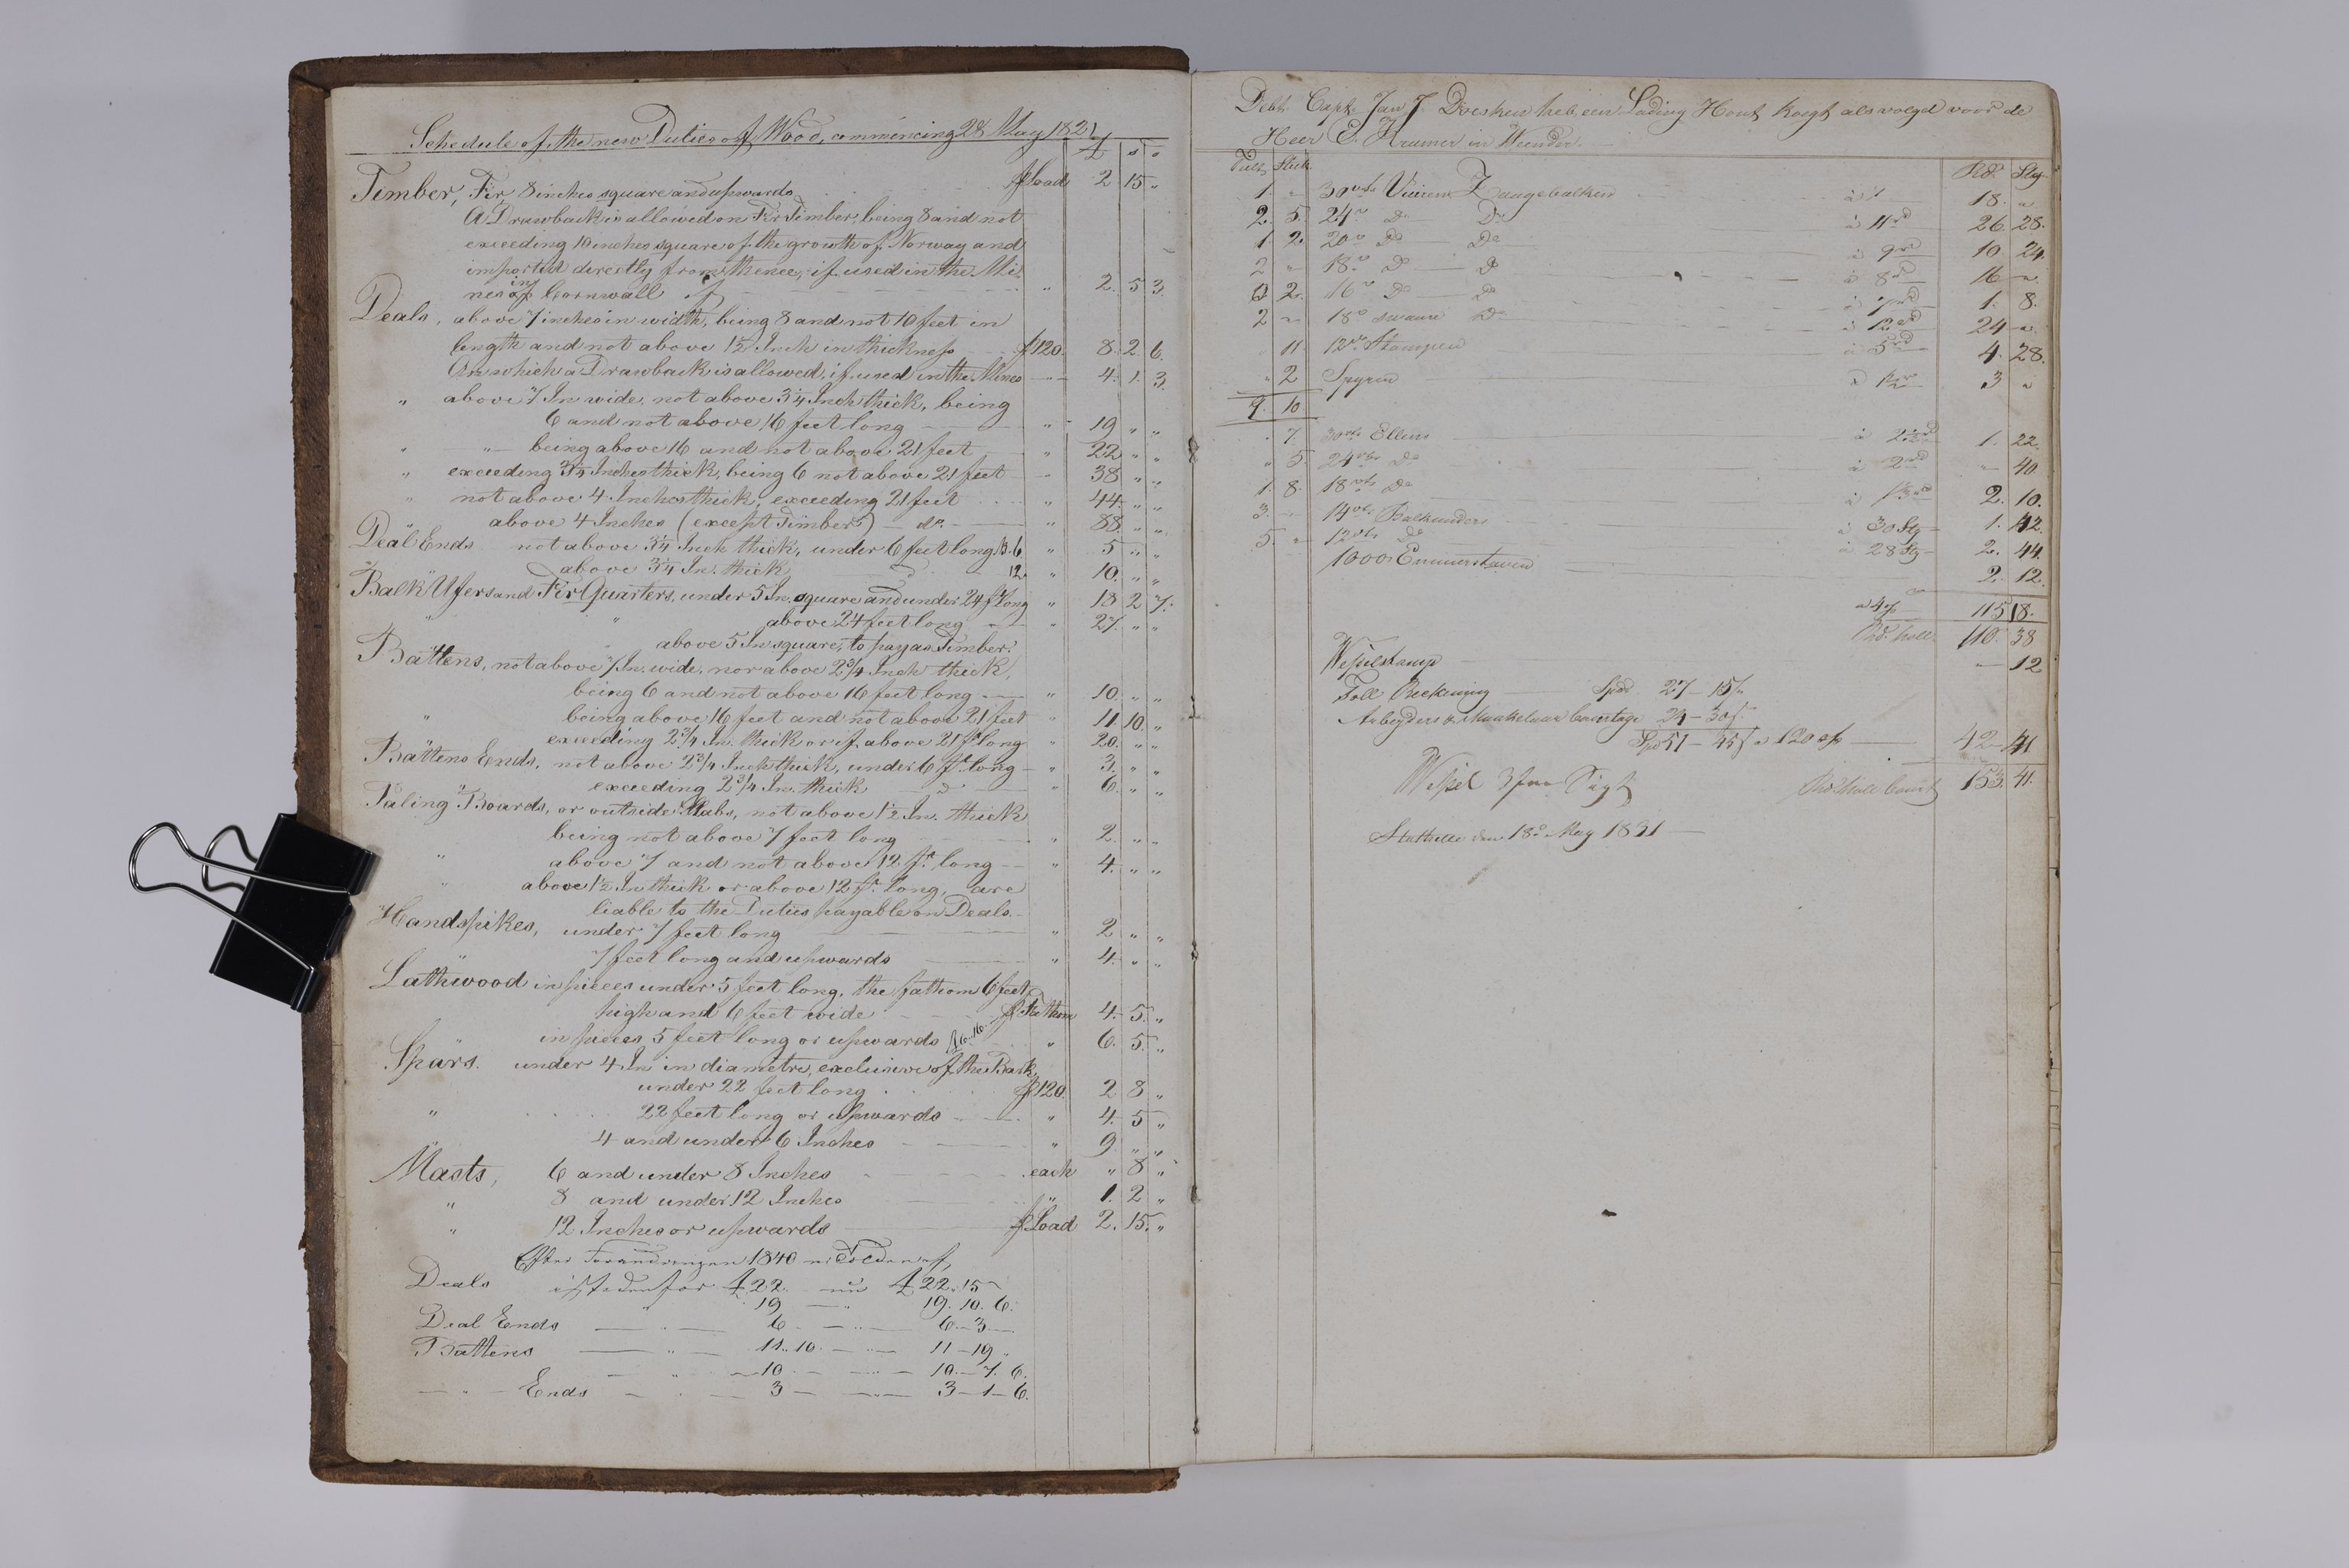 , Priscourant-tømmerpriser, 1834-38, 1834-1838, s. 3